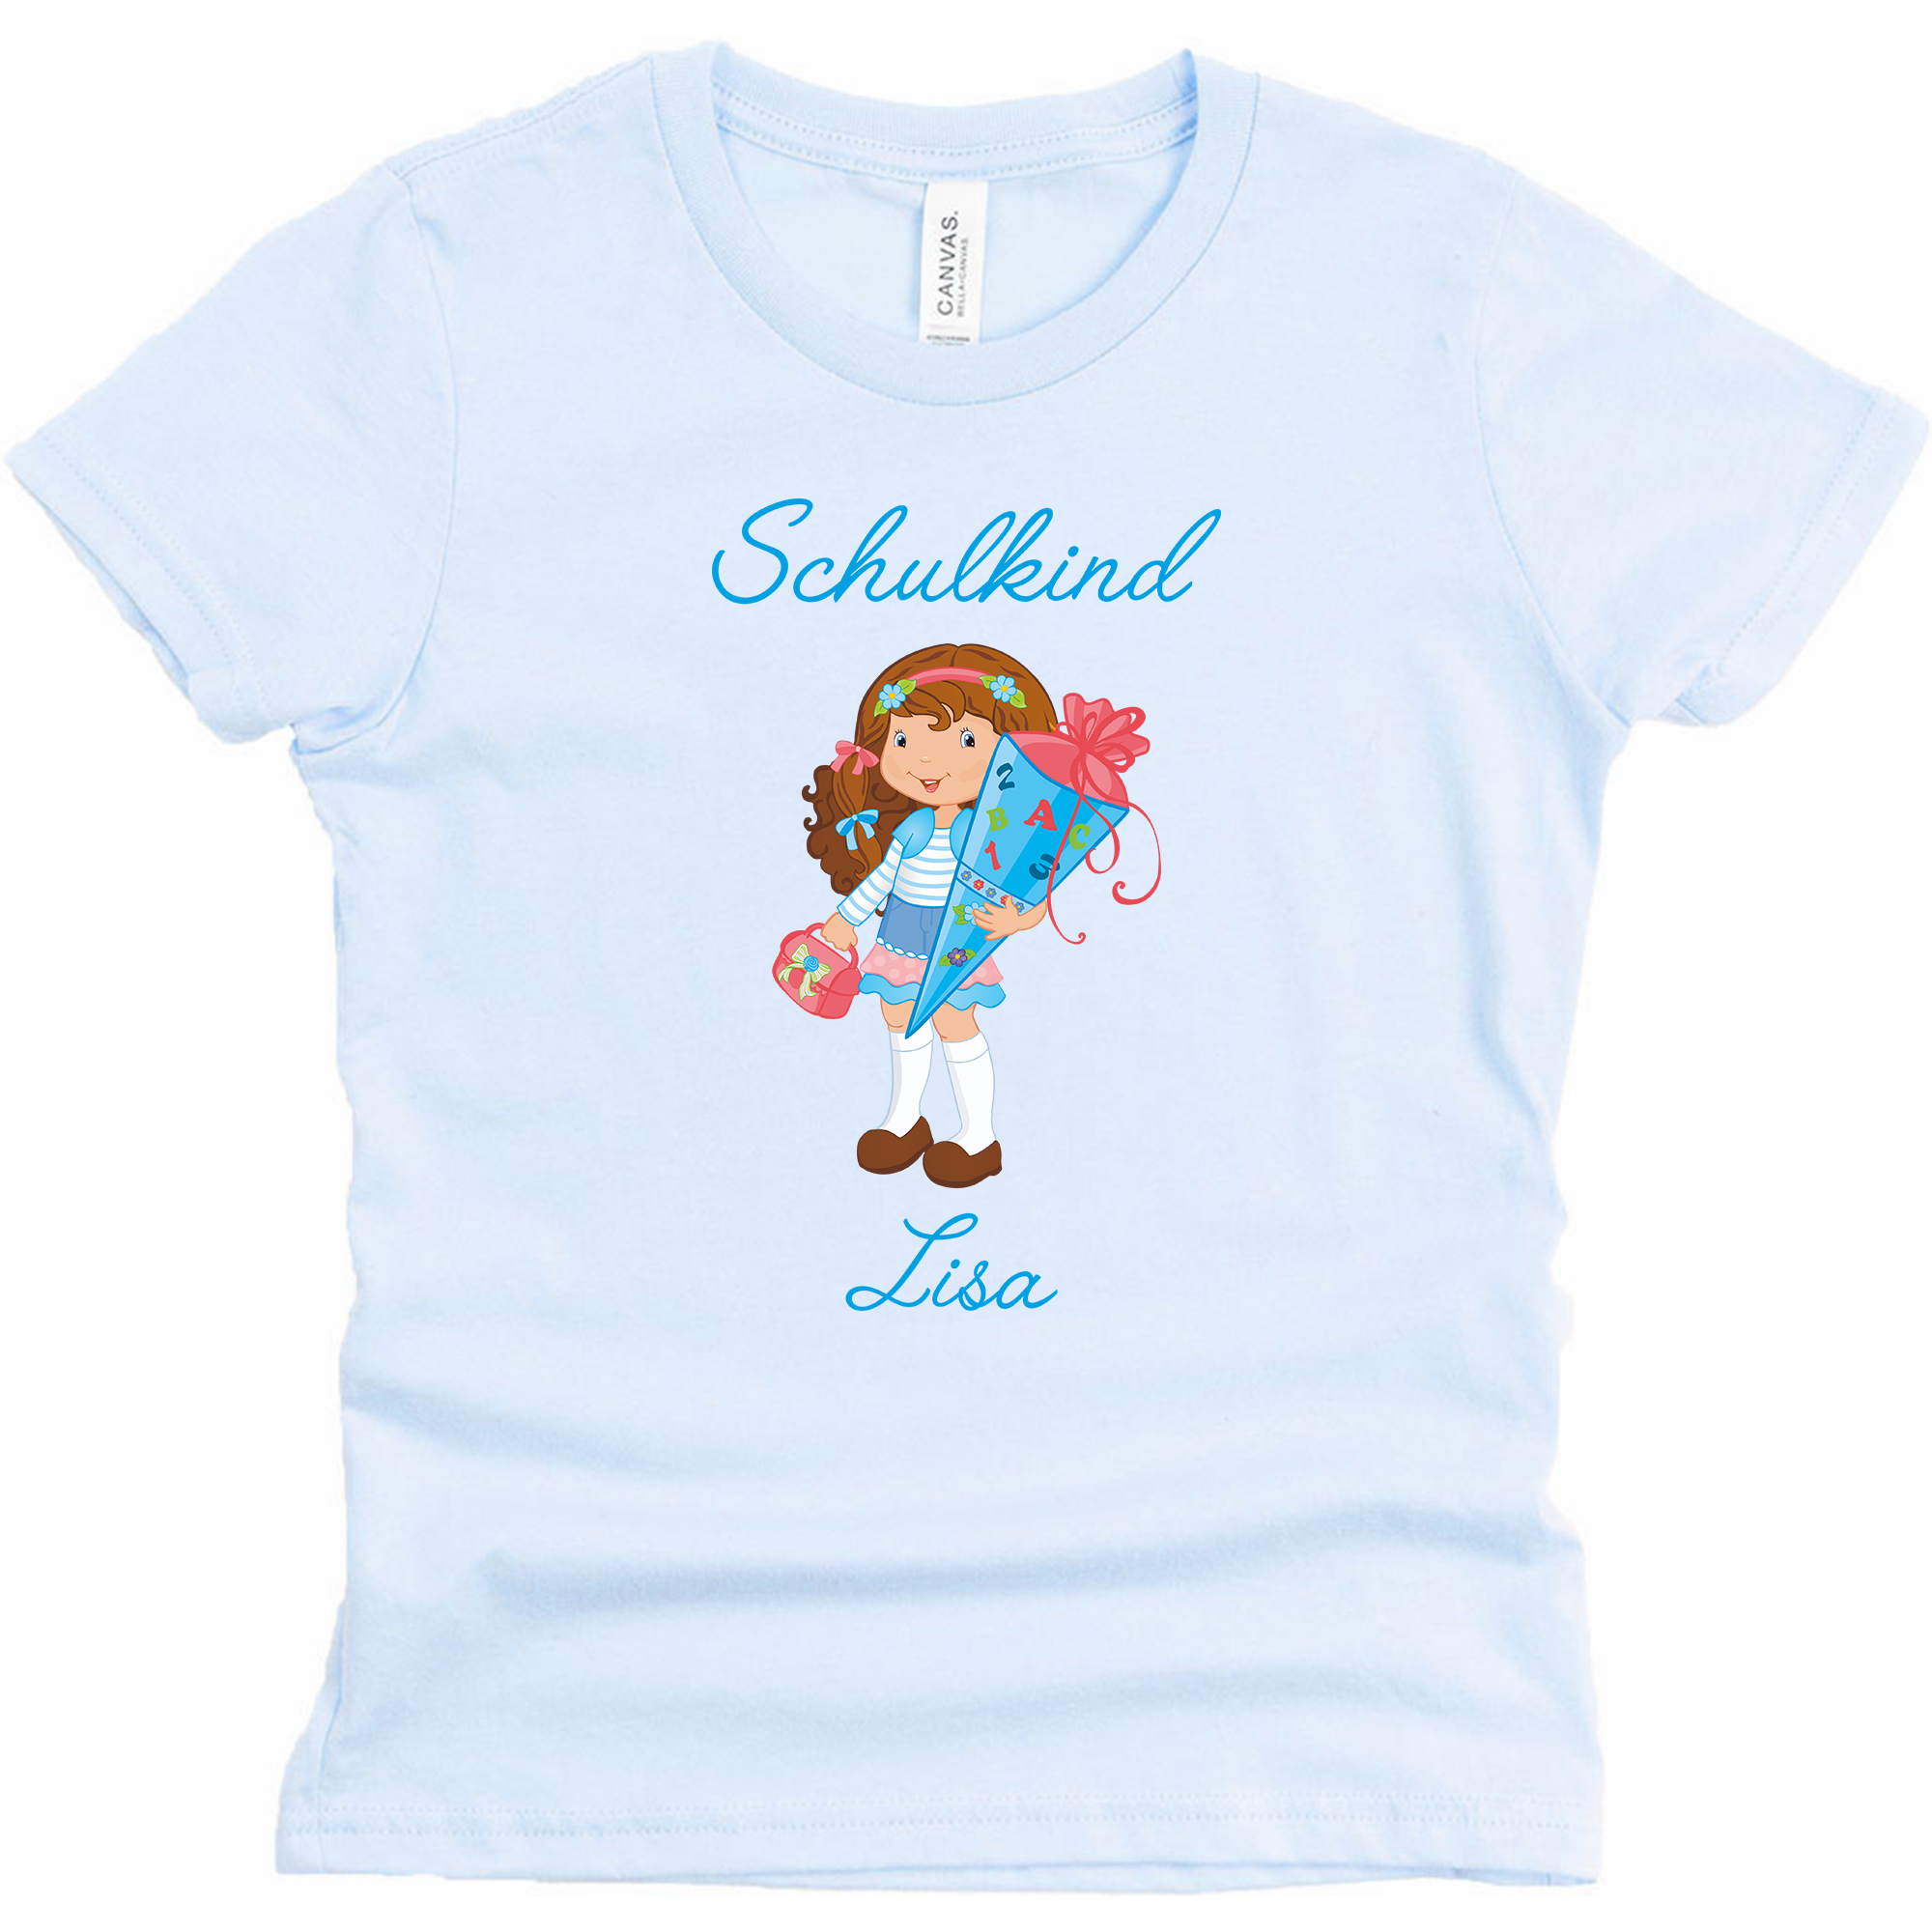 Schulanfangsshirt in skyblue mit Name und Motiv Mädchen braun blau